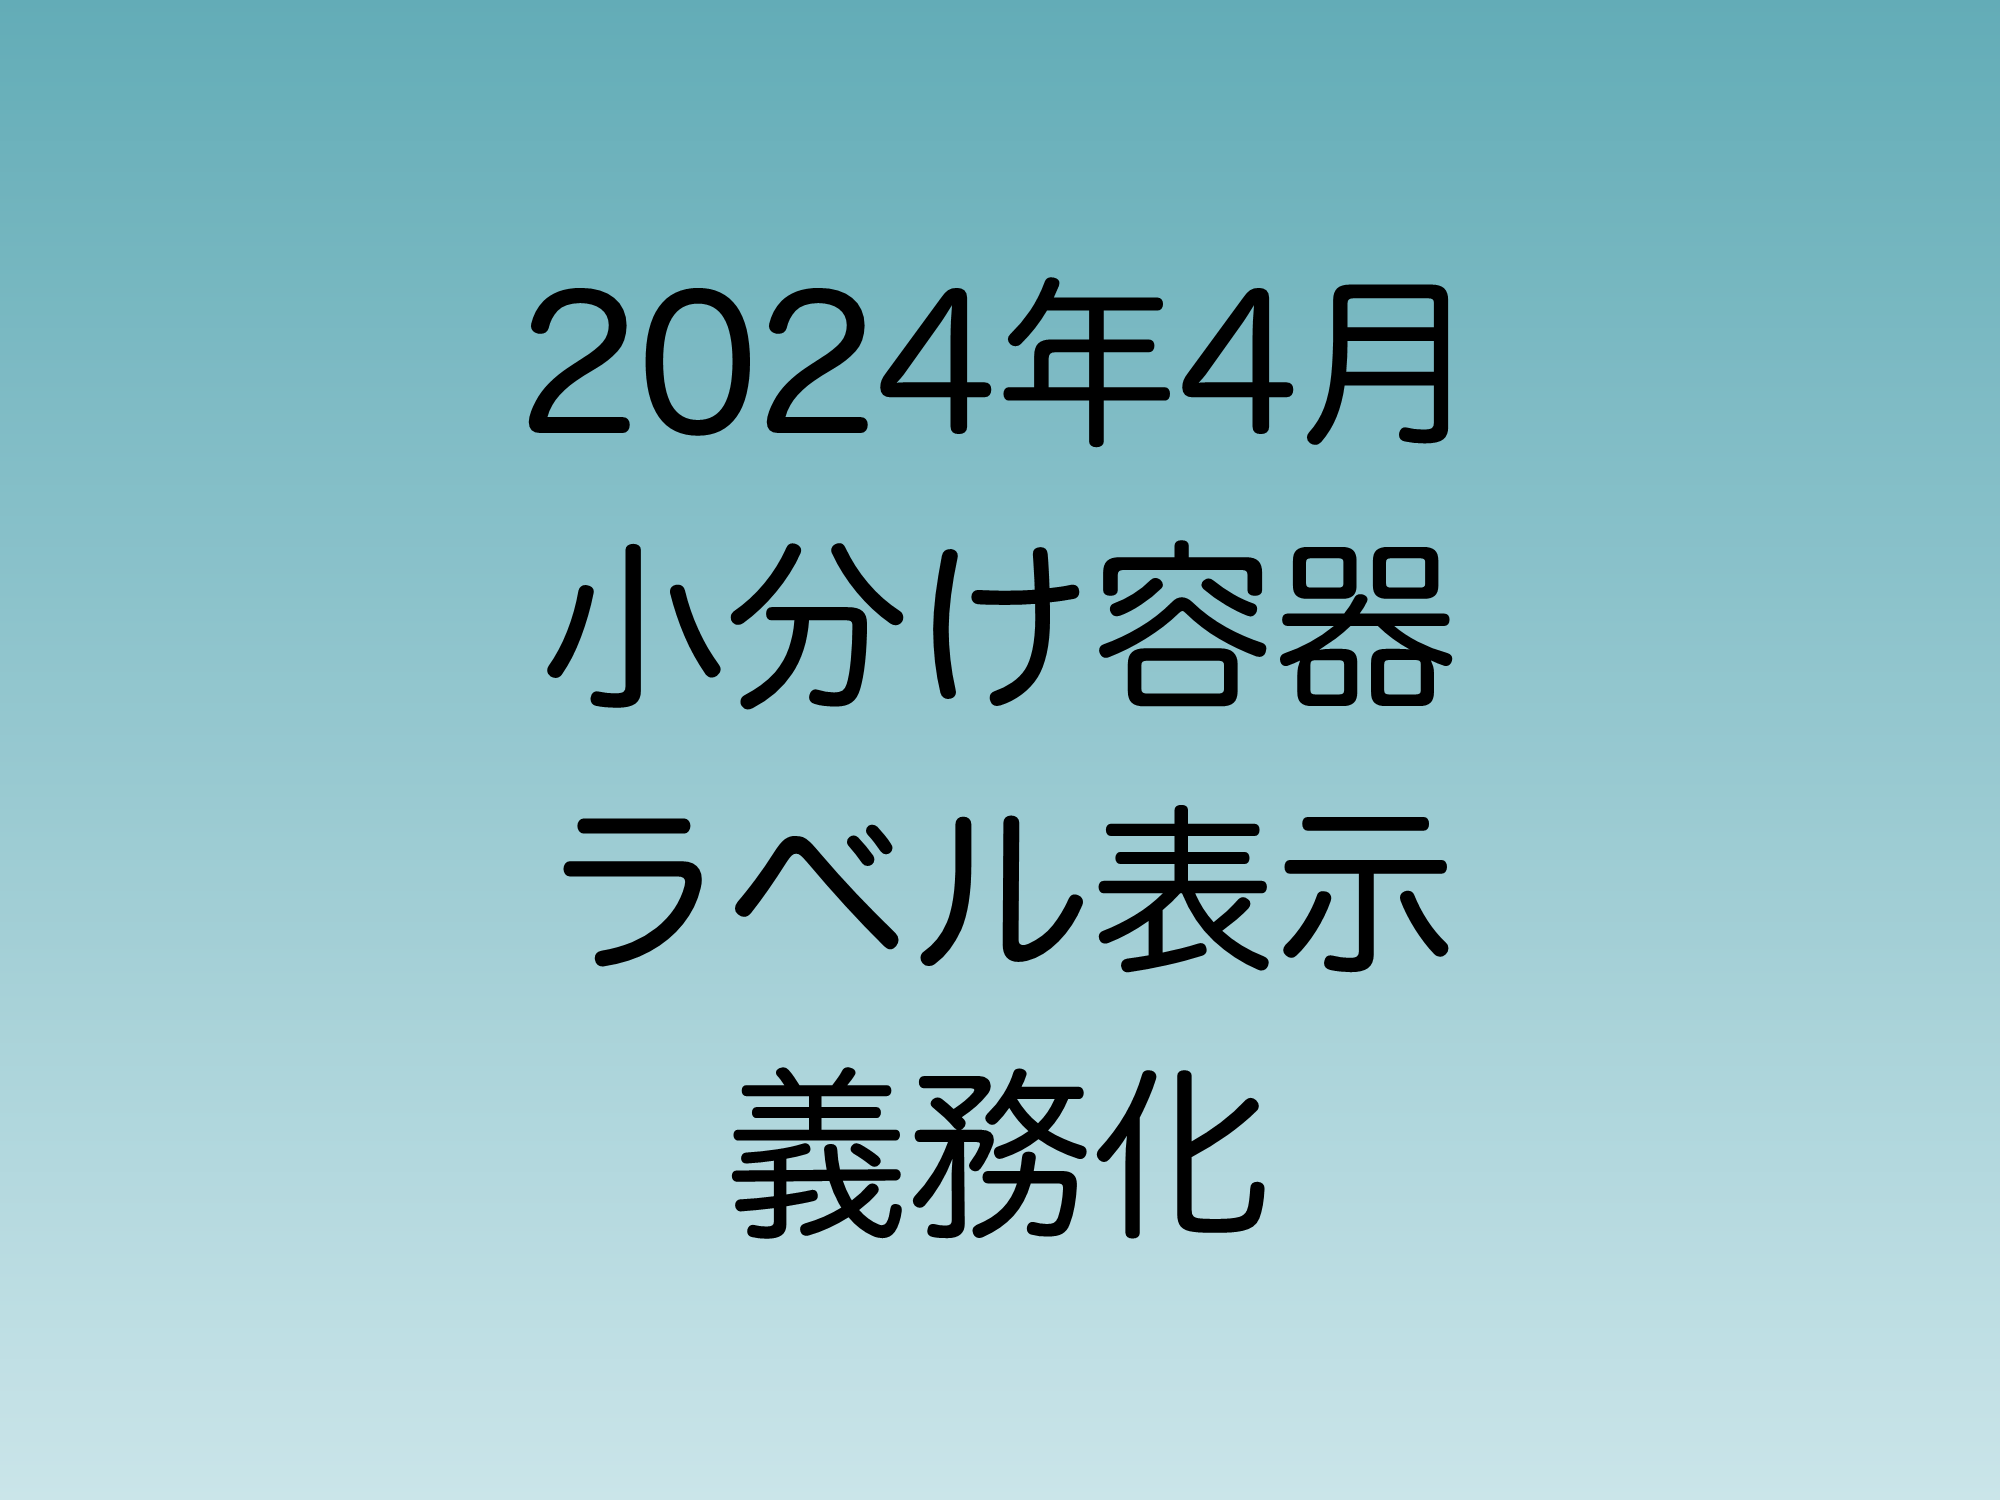 2024年4月化学物質の小分け容器ラベル表示義務化